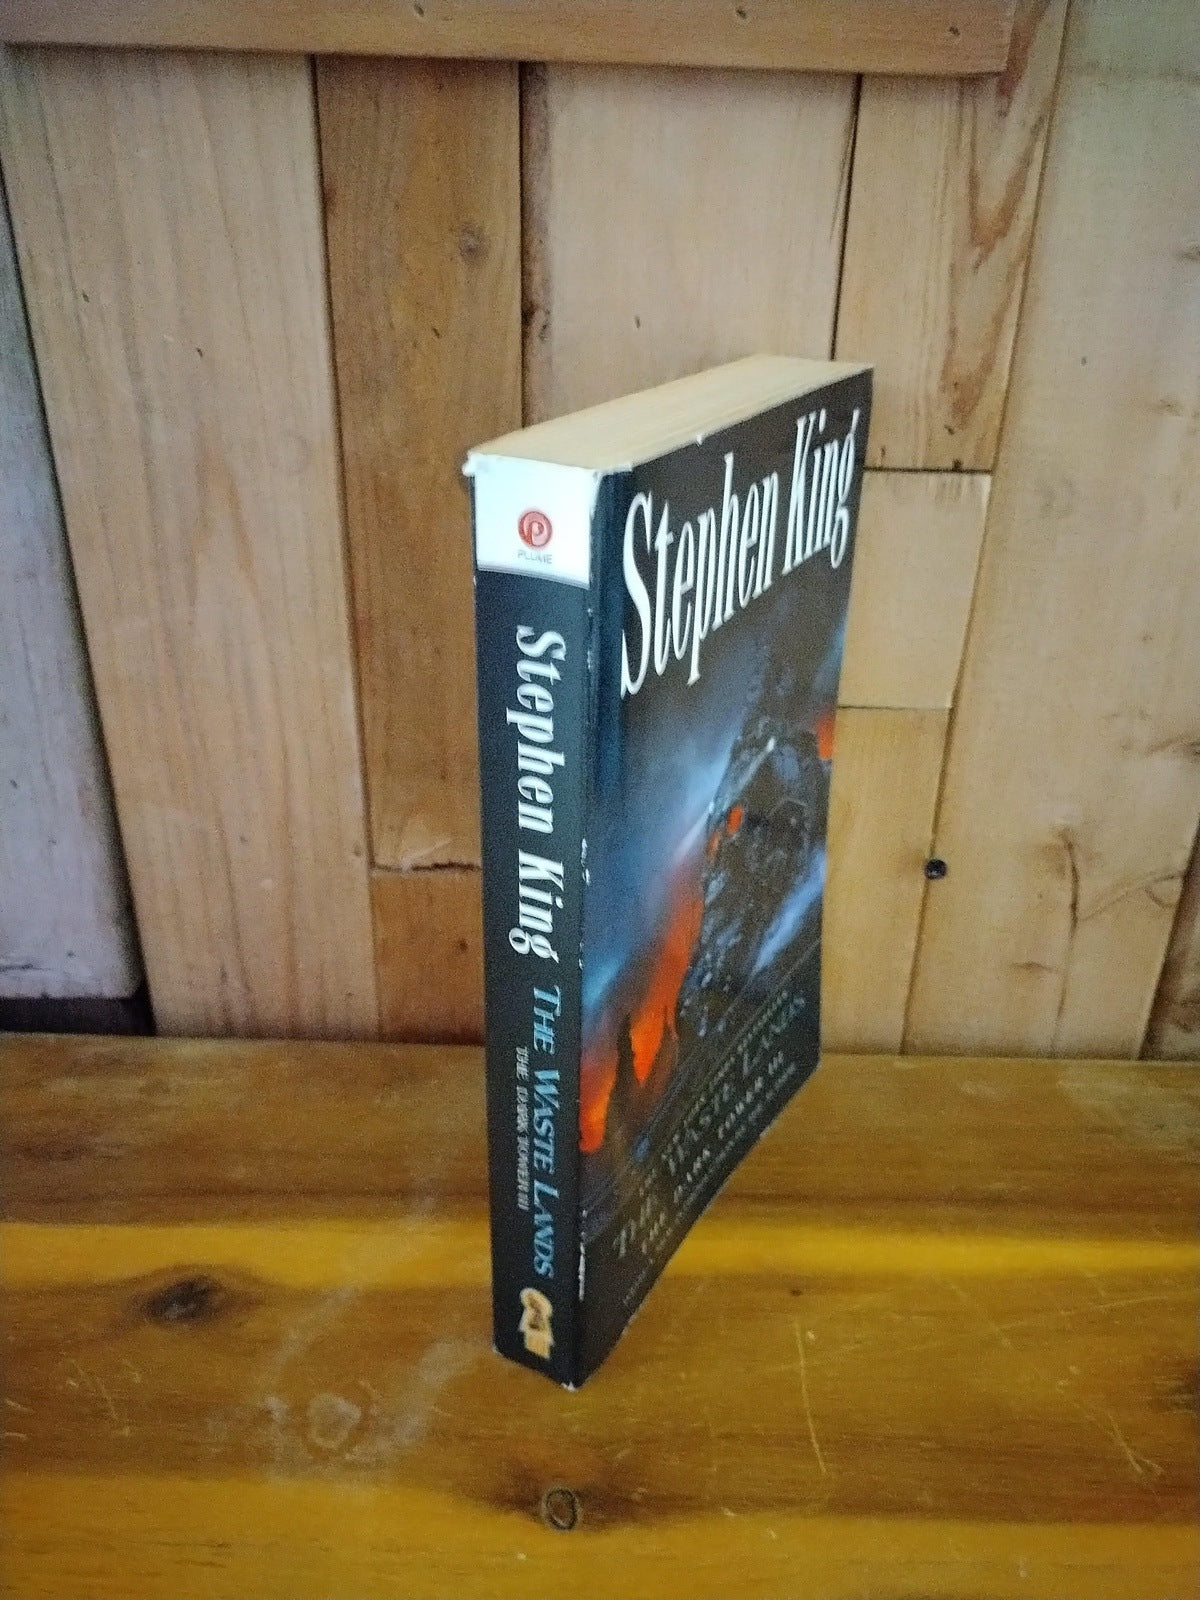 Stephen King The Wastelands Paperback